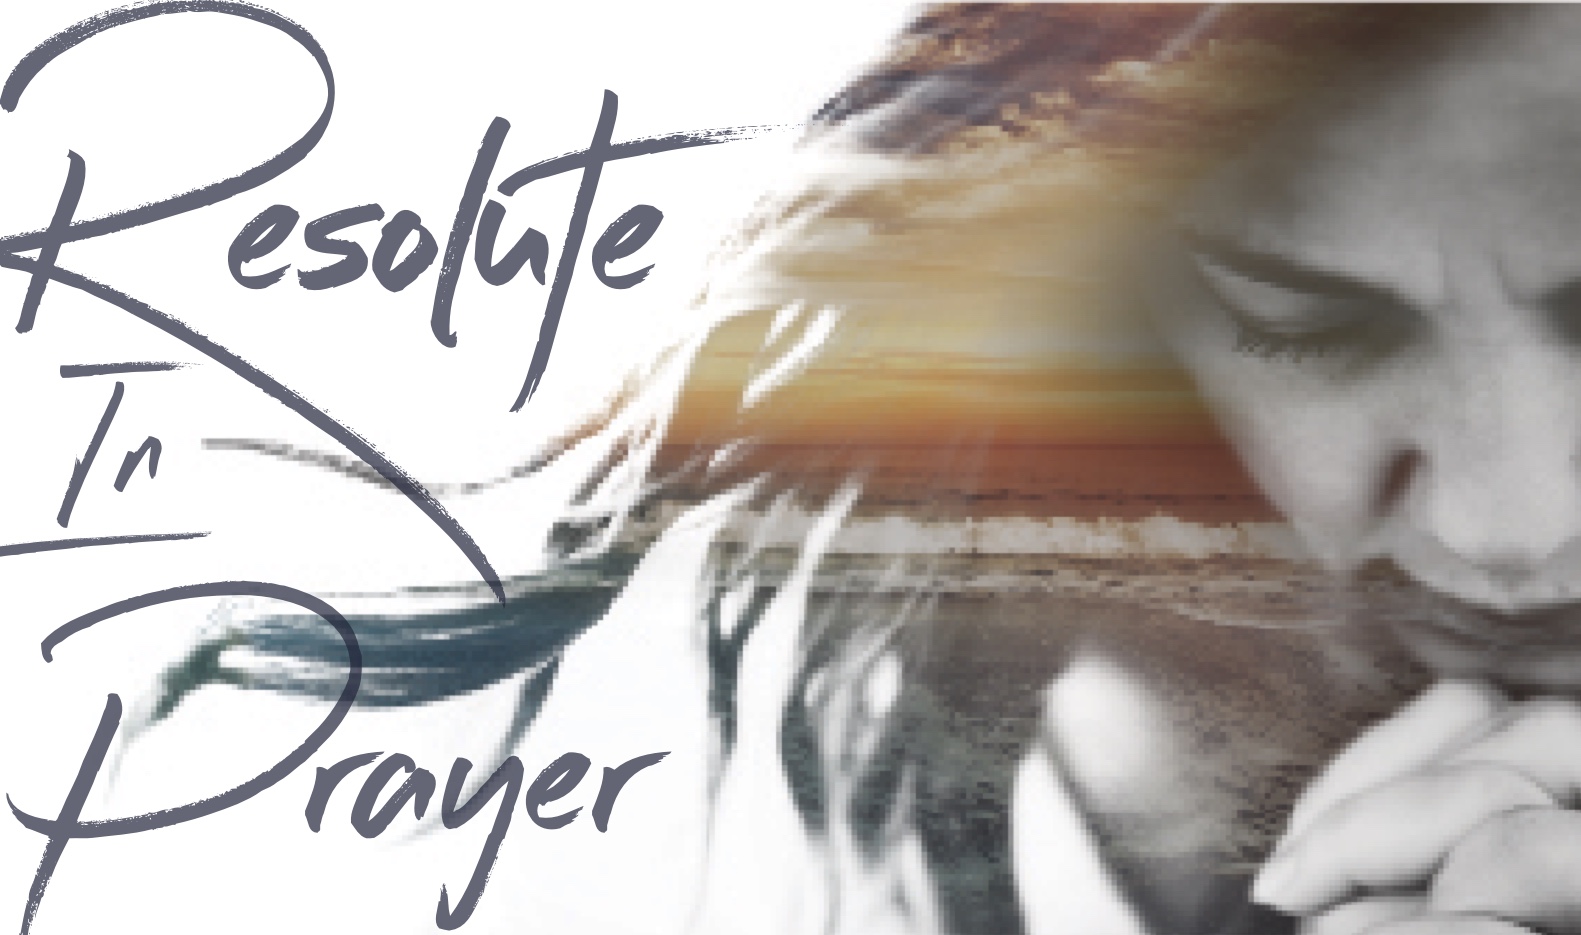 Resolute In Prayer